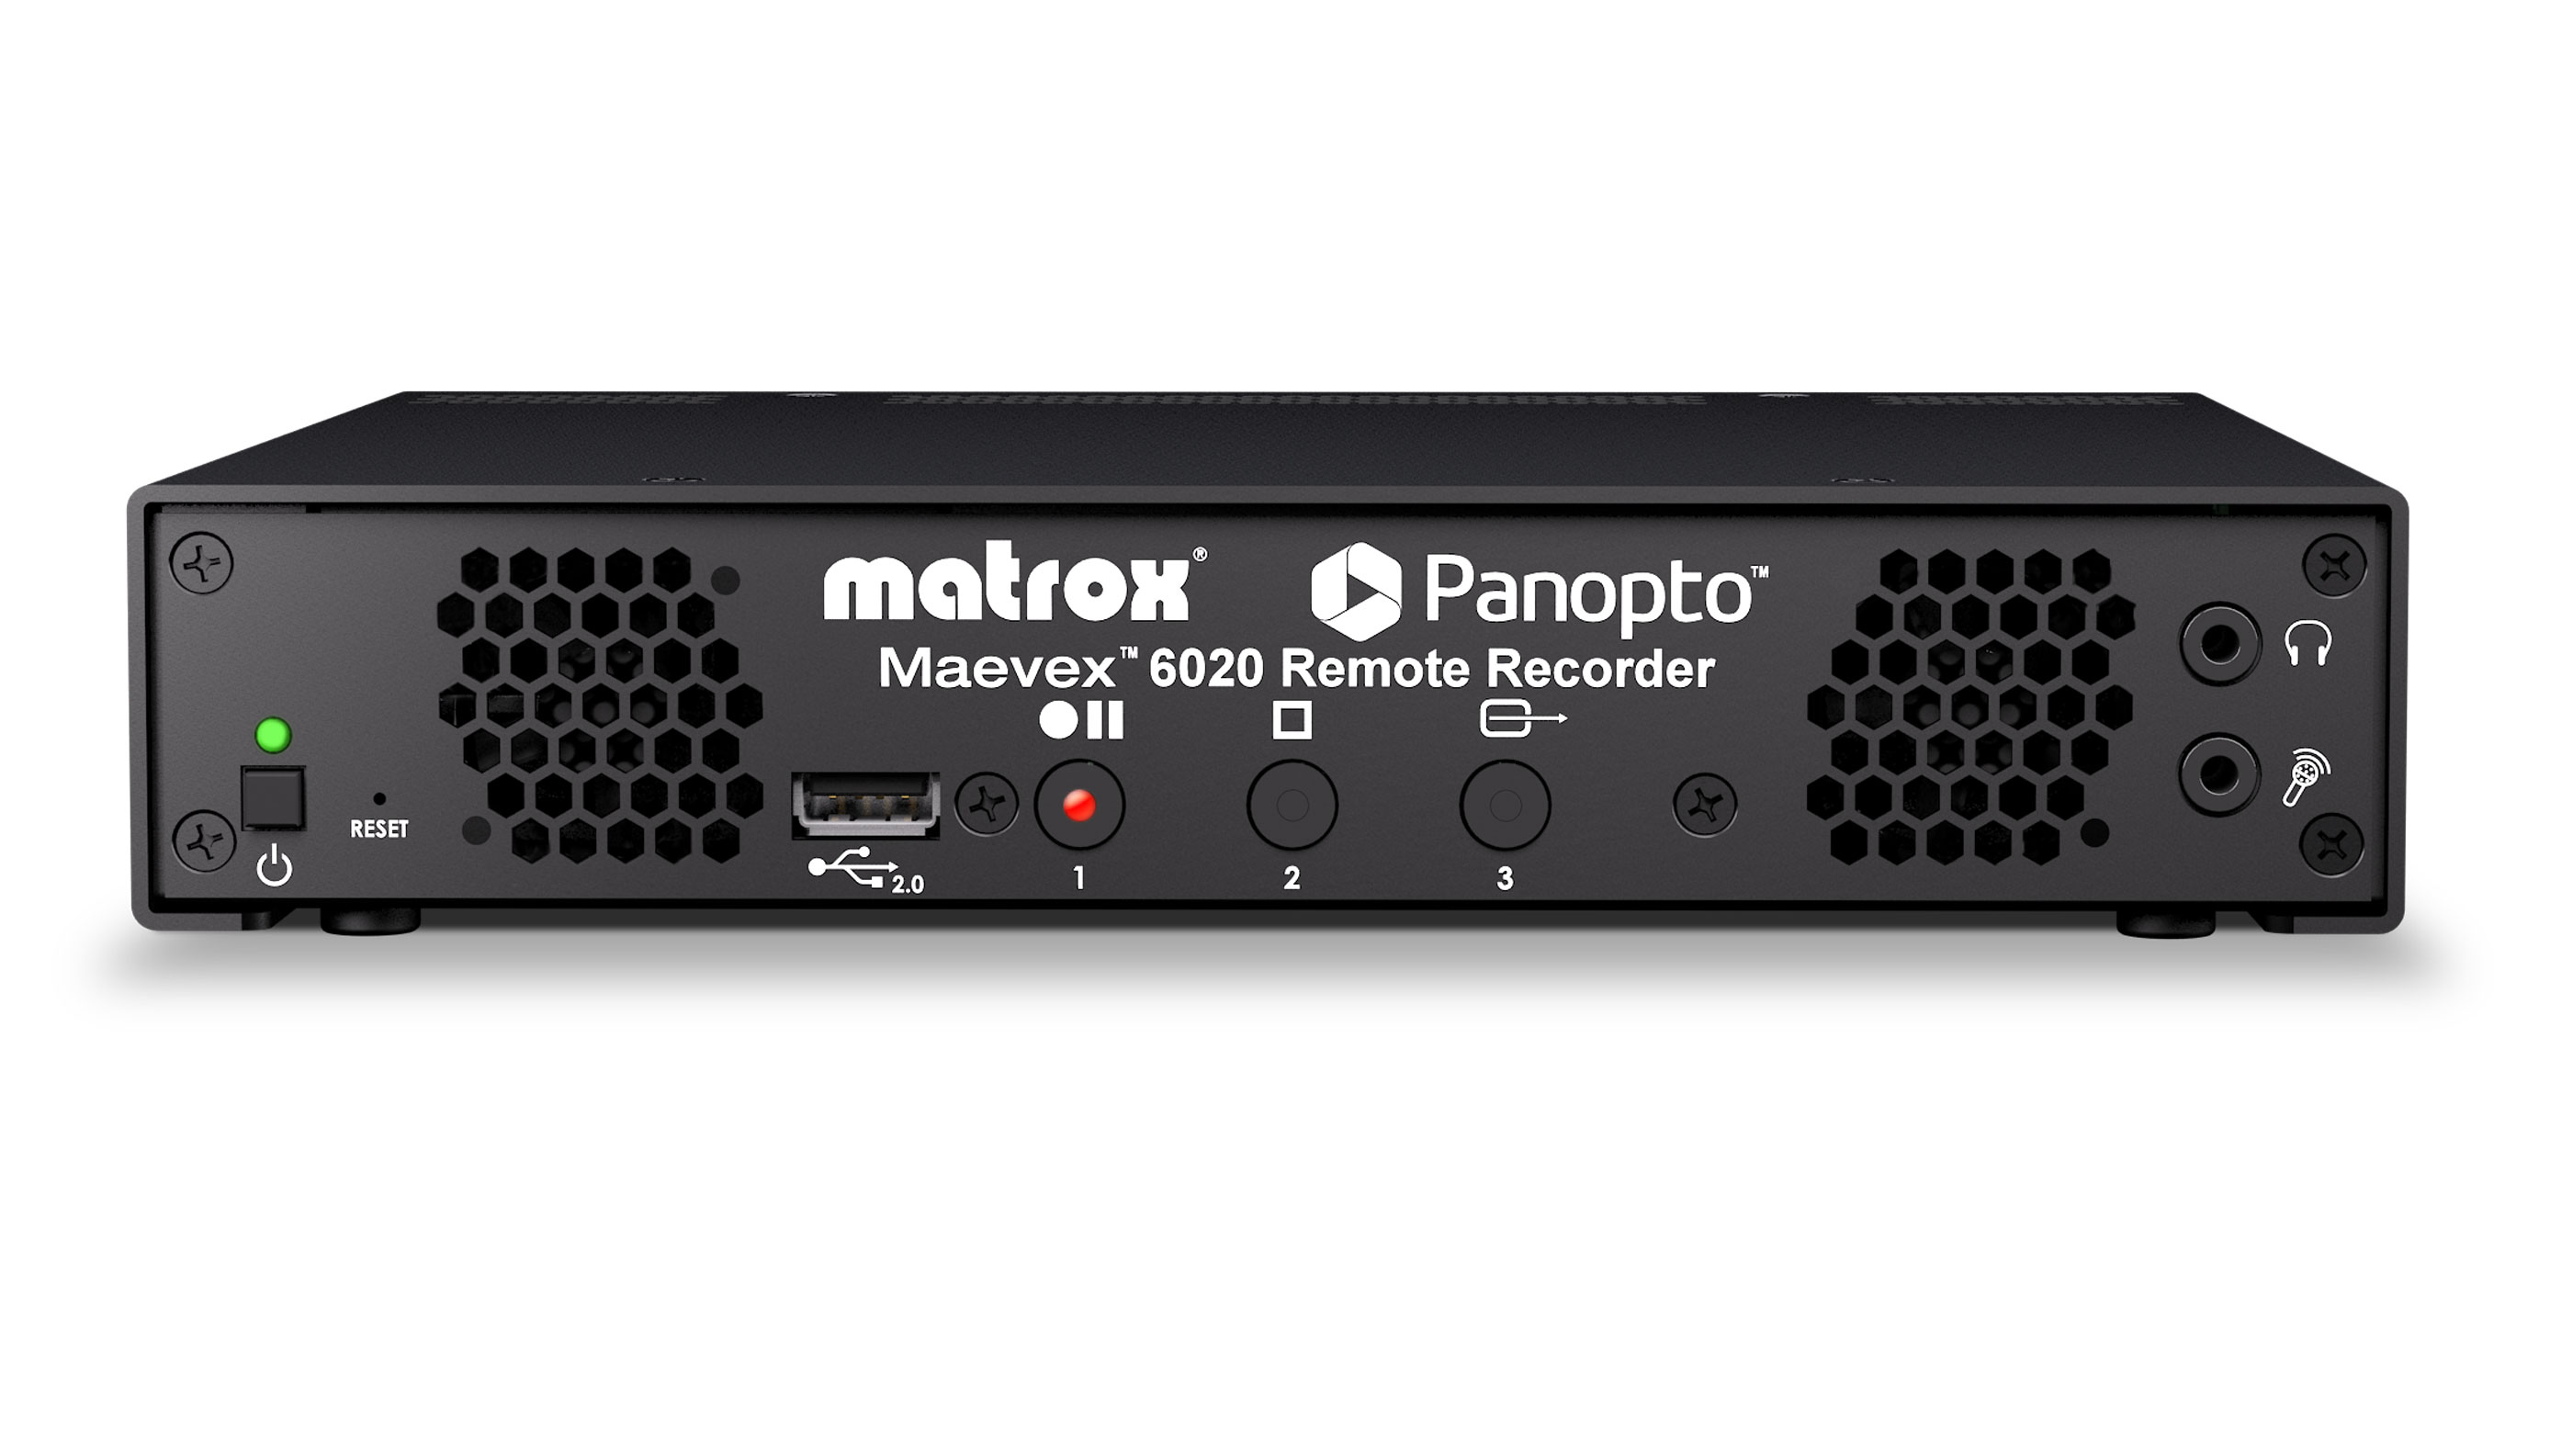 Maevex 6020 Remote Recorder